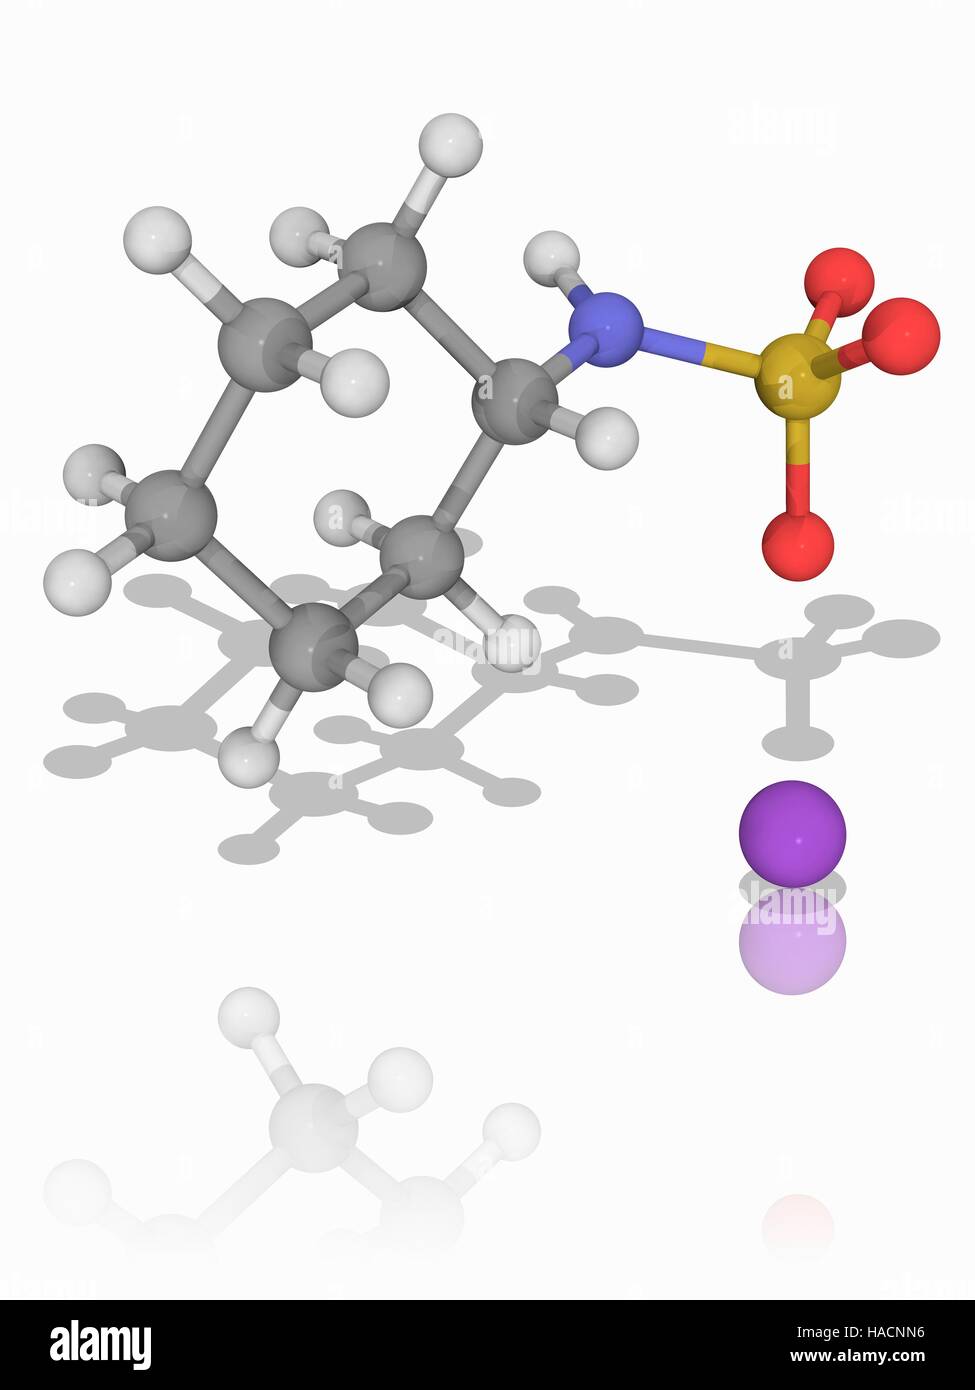 Natriumcyclamat. Molekulares Modell des künstlichen Süßstoff Natriumcyclamat (C6. H12. N.Na.O3.S). Es ist bis zu 50-mal süßer als normaler Zucker (Saccharose). Atome als Kugeln dargestellt werden und sind farblich gekennzeichnet: Kohlenstoff (grau), Wasserstoff (weiß), Stickstoff (blau), Sauerstoff (rot), Schwefel (gelb) und Natrium (violett). Abbildung. Stockfoto